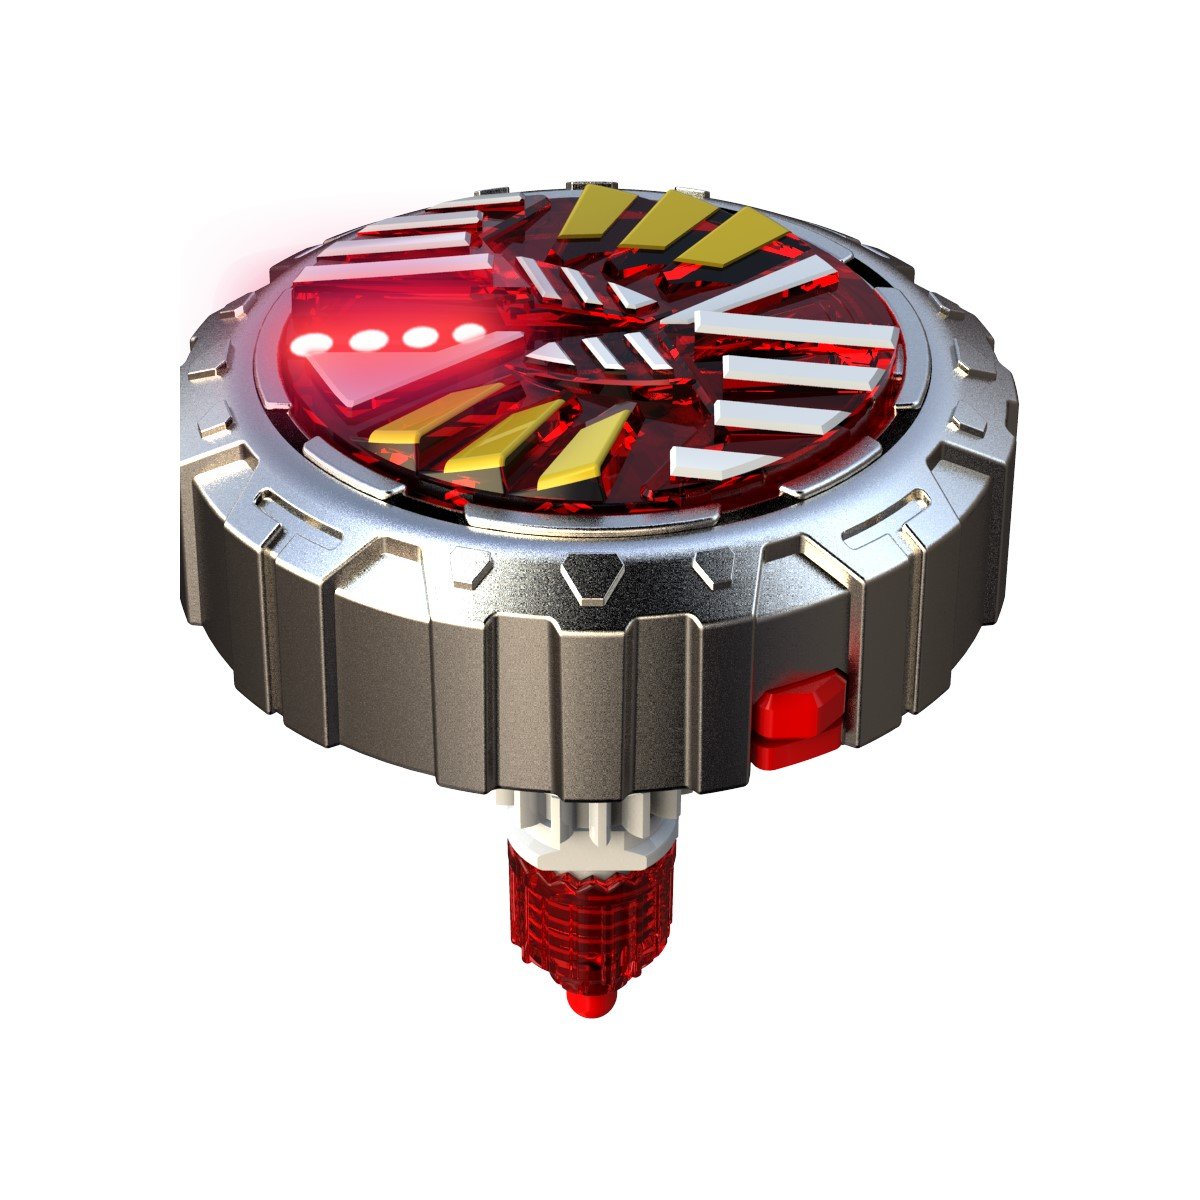 Spinner Mad - Blaster double shoot avec 2 toupies LED - La Grande Récré